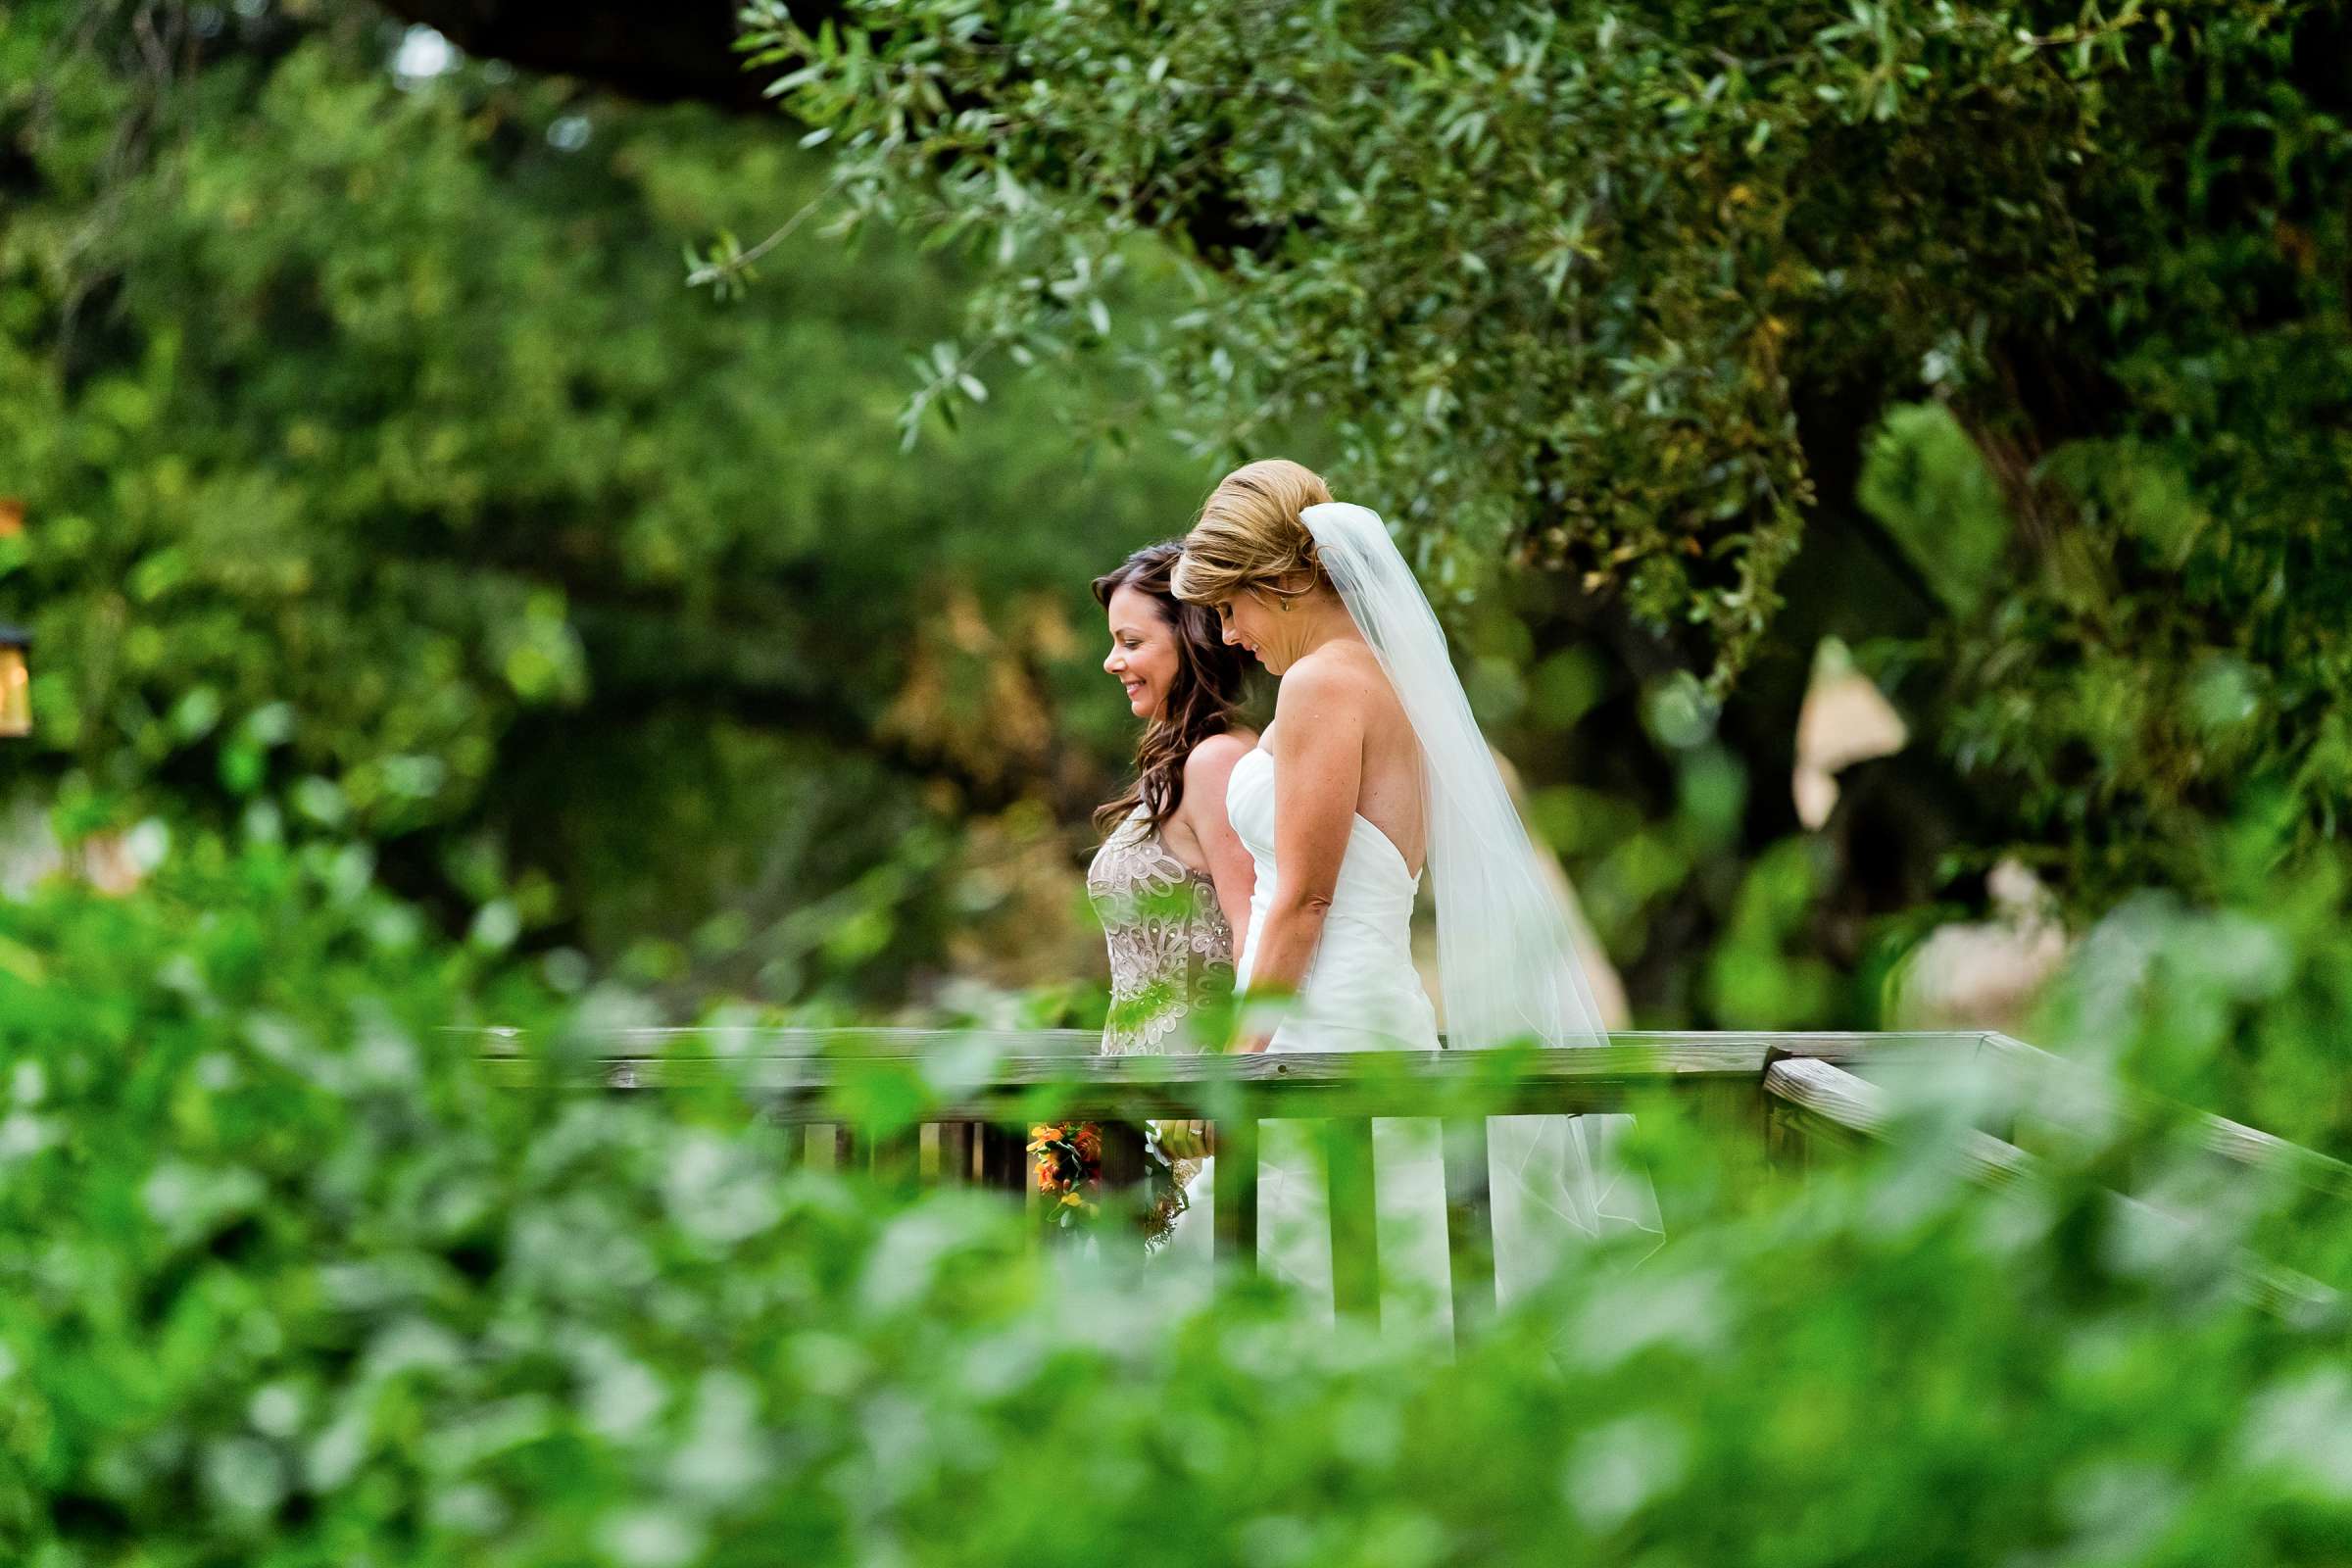 Temecula Creek Inn Wedding, Elizabeth and Natasha Wedding Photo #325799 by True Photography